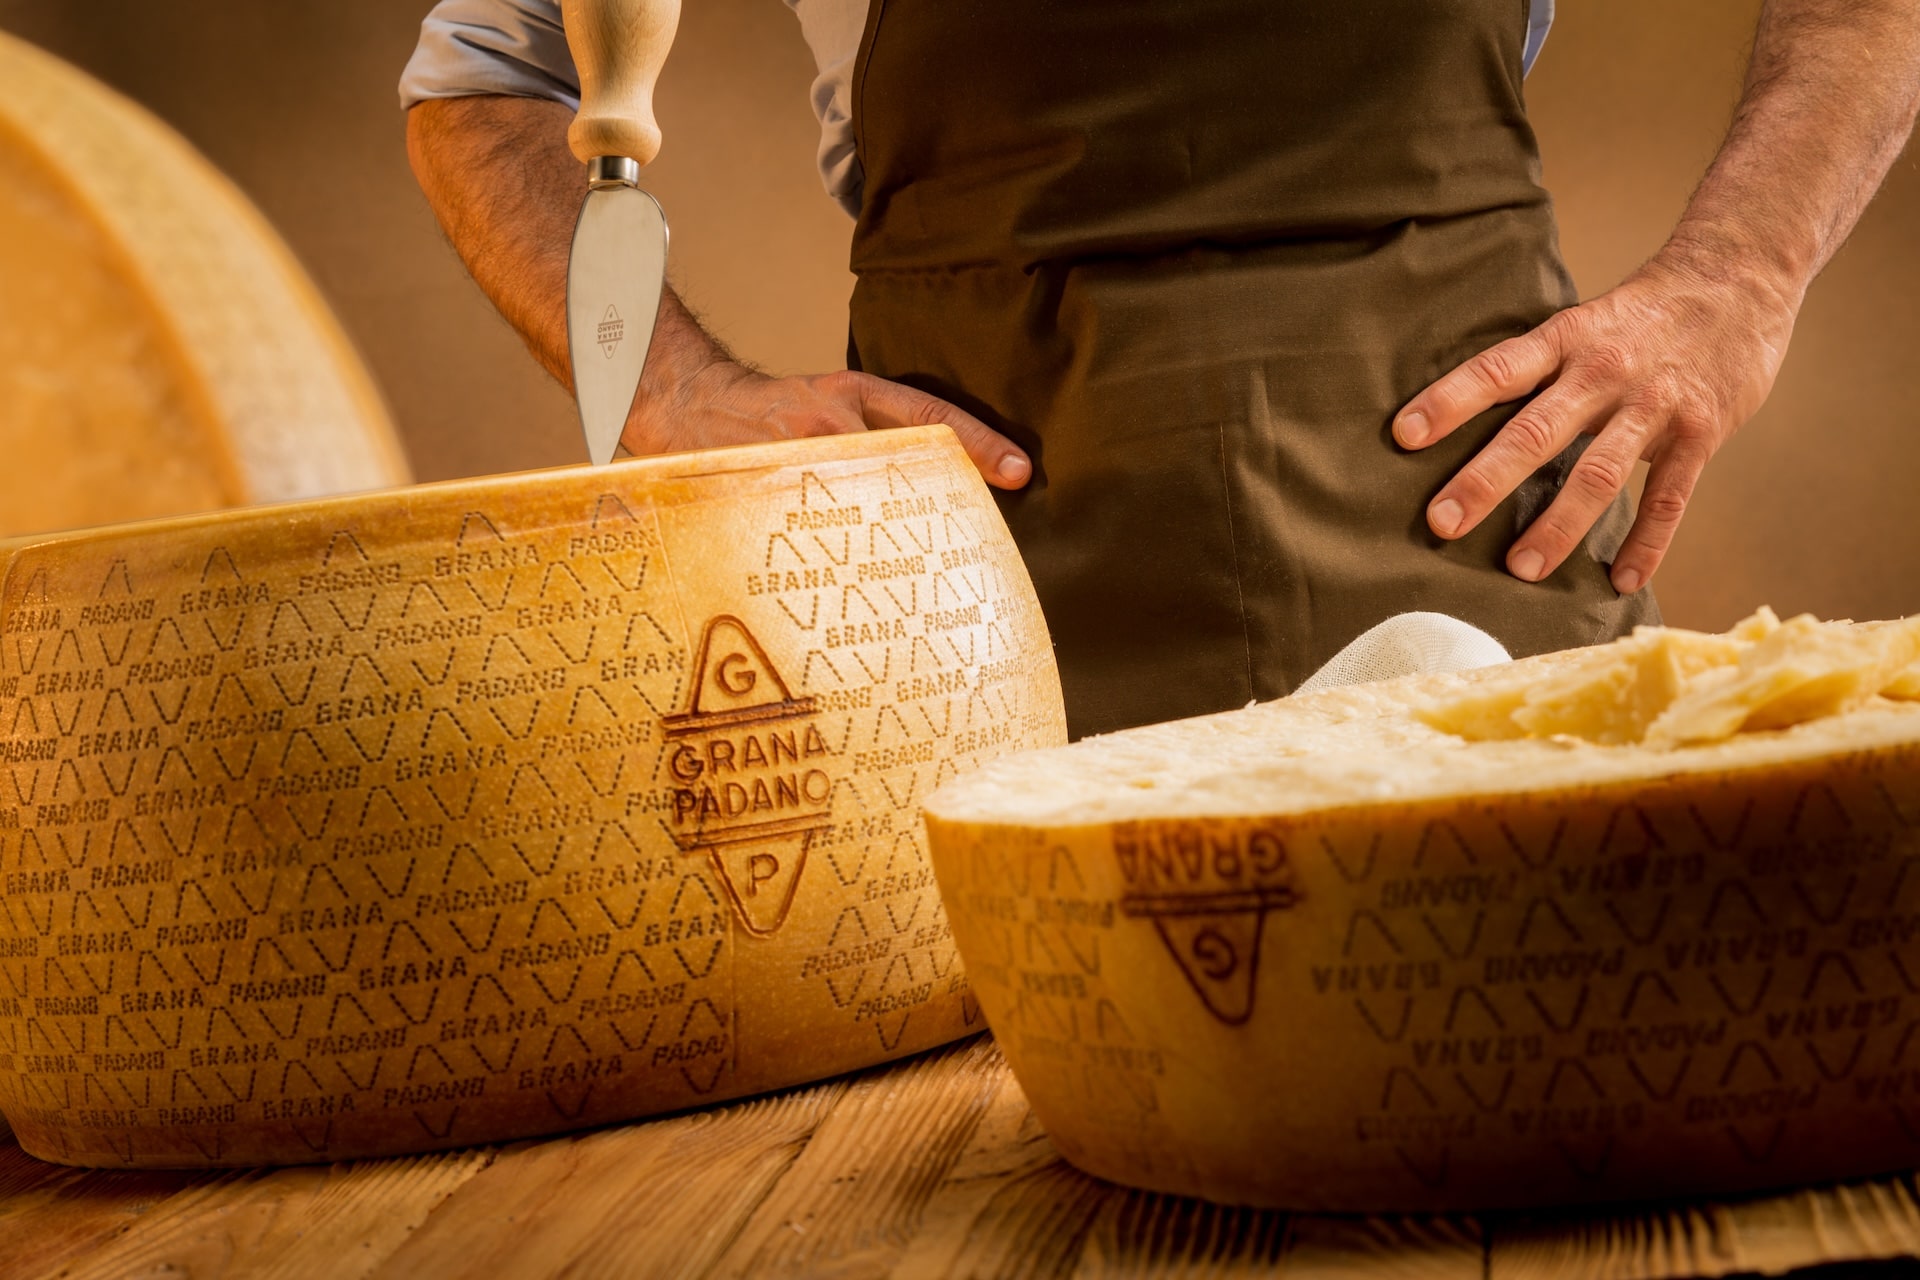 Grana Padano: hogyan határozza meg a környezet a sajt sajátosságait